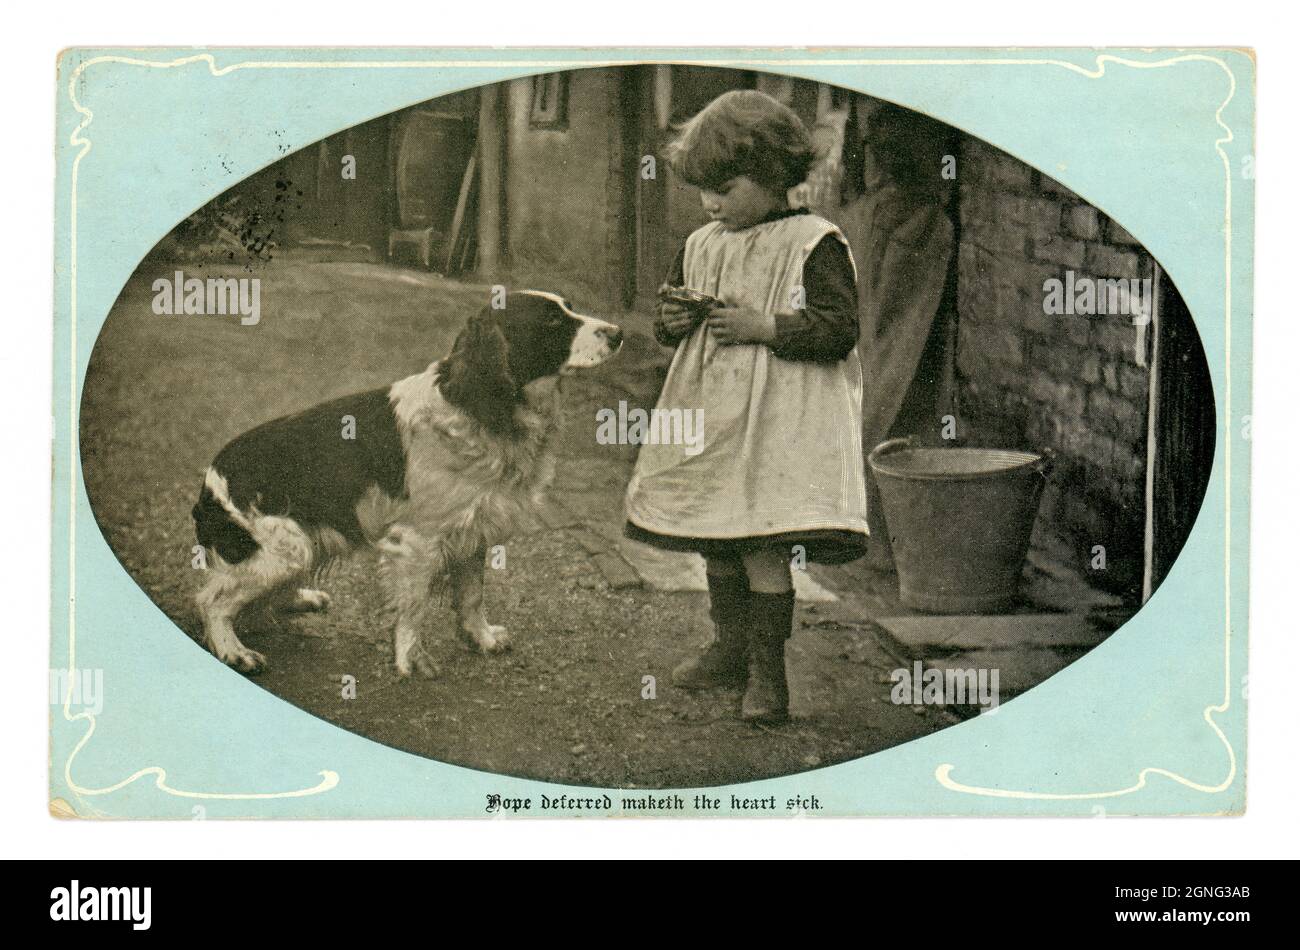 Originale sentimentale edwardianische Grüße echte fotografische Postkarte, von einem jungen edwardianischen / viktorianischen Mädchen auf einem Bauernhof, das eine Schürze trägt, die einem wartenden springer Spaniel Fetzen füttert - "Hope Deferred Maketh the Heart Sick" ist die Inschrift. Veröffentlicht im April 1904, veröffentlicht von Marcus Ward & Co. UK Stockfoto